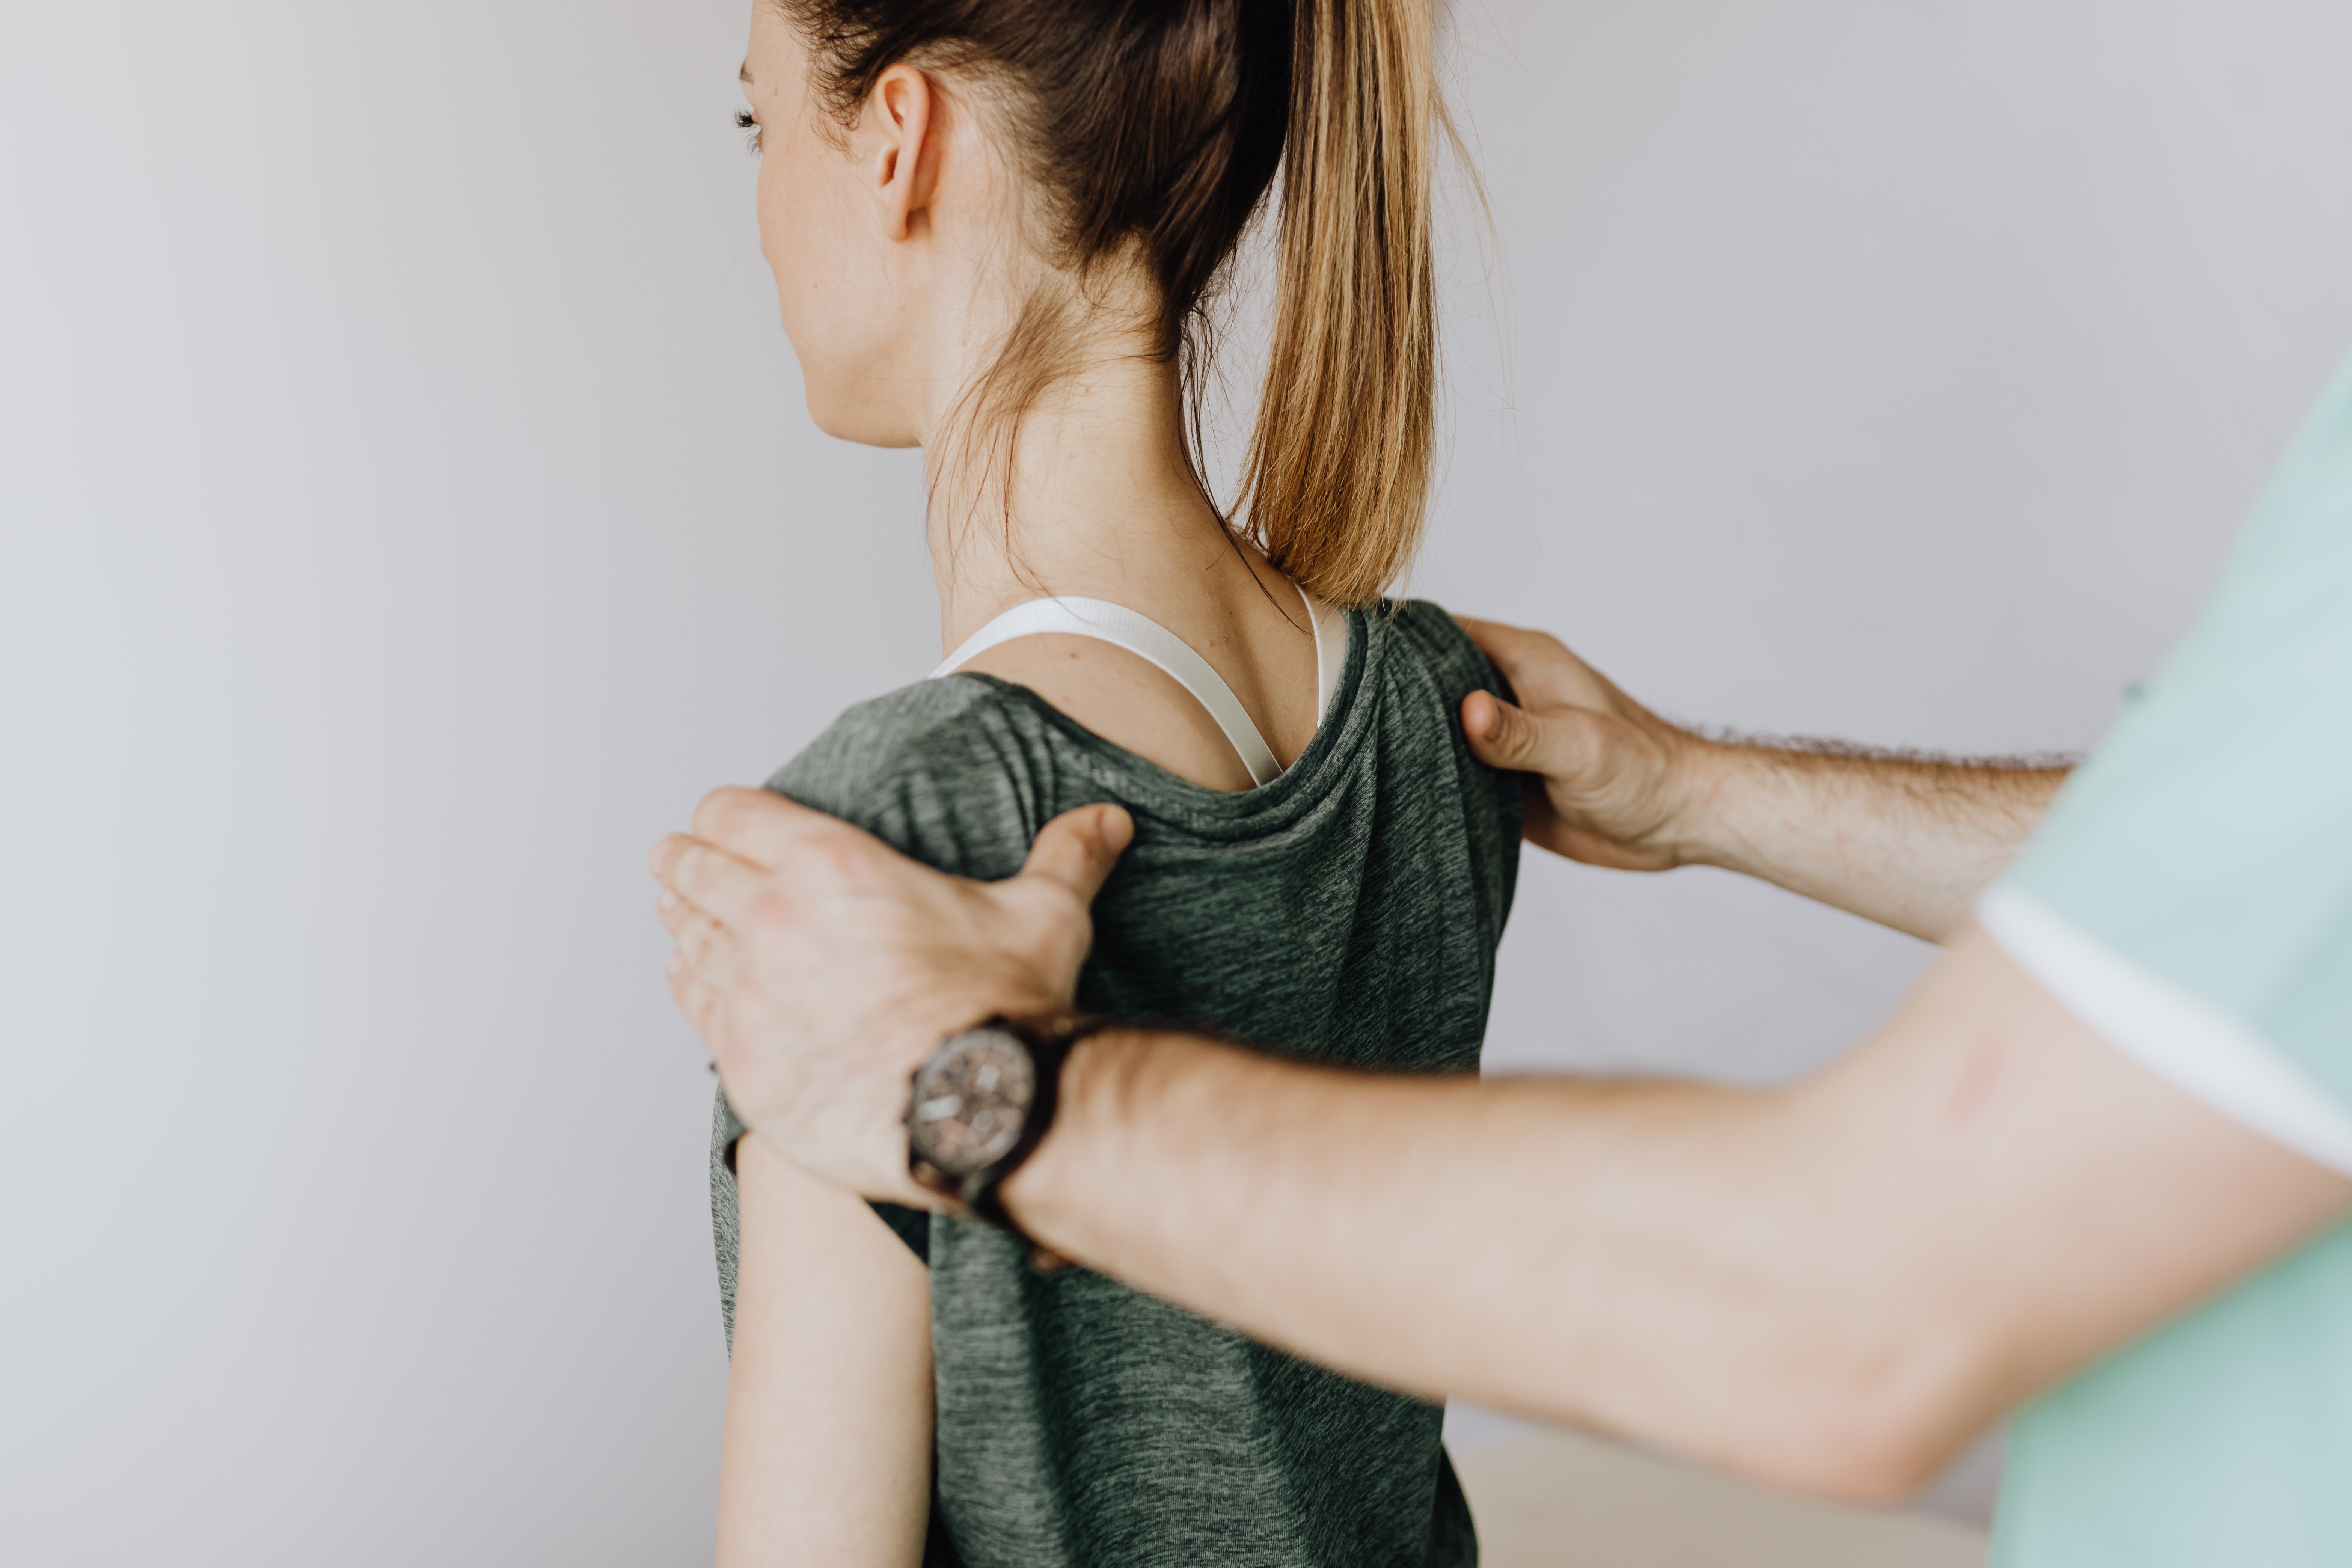 fisioterapista che effettua un massaggio per sciogliere una contrattura muscolare alla schiena